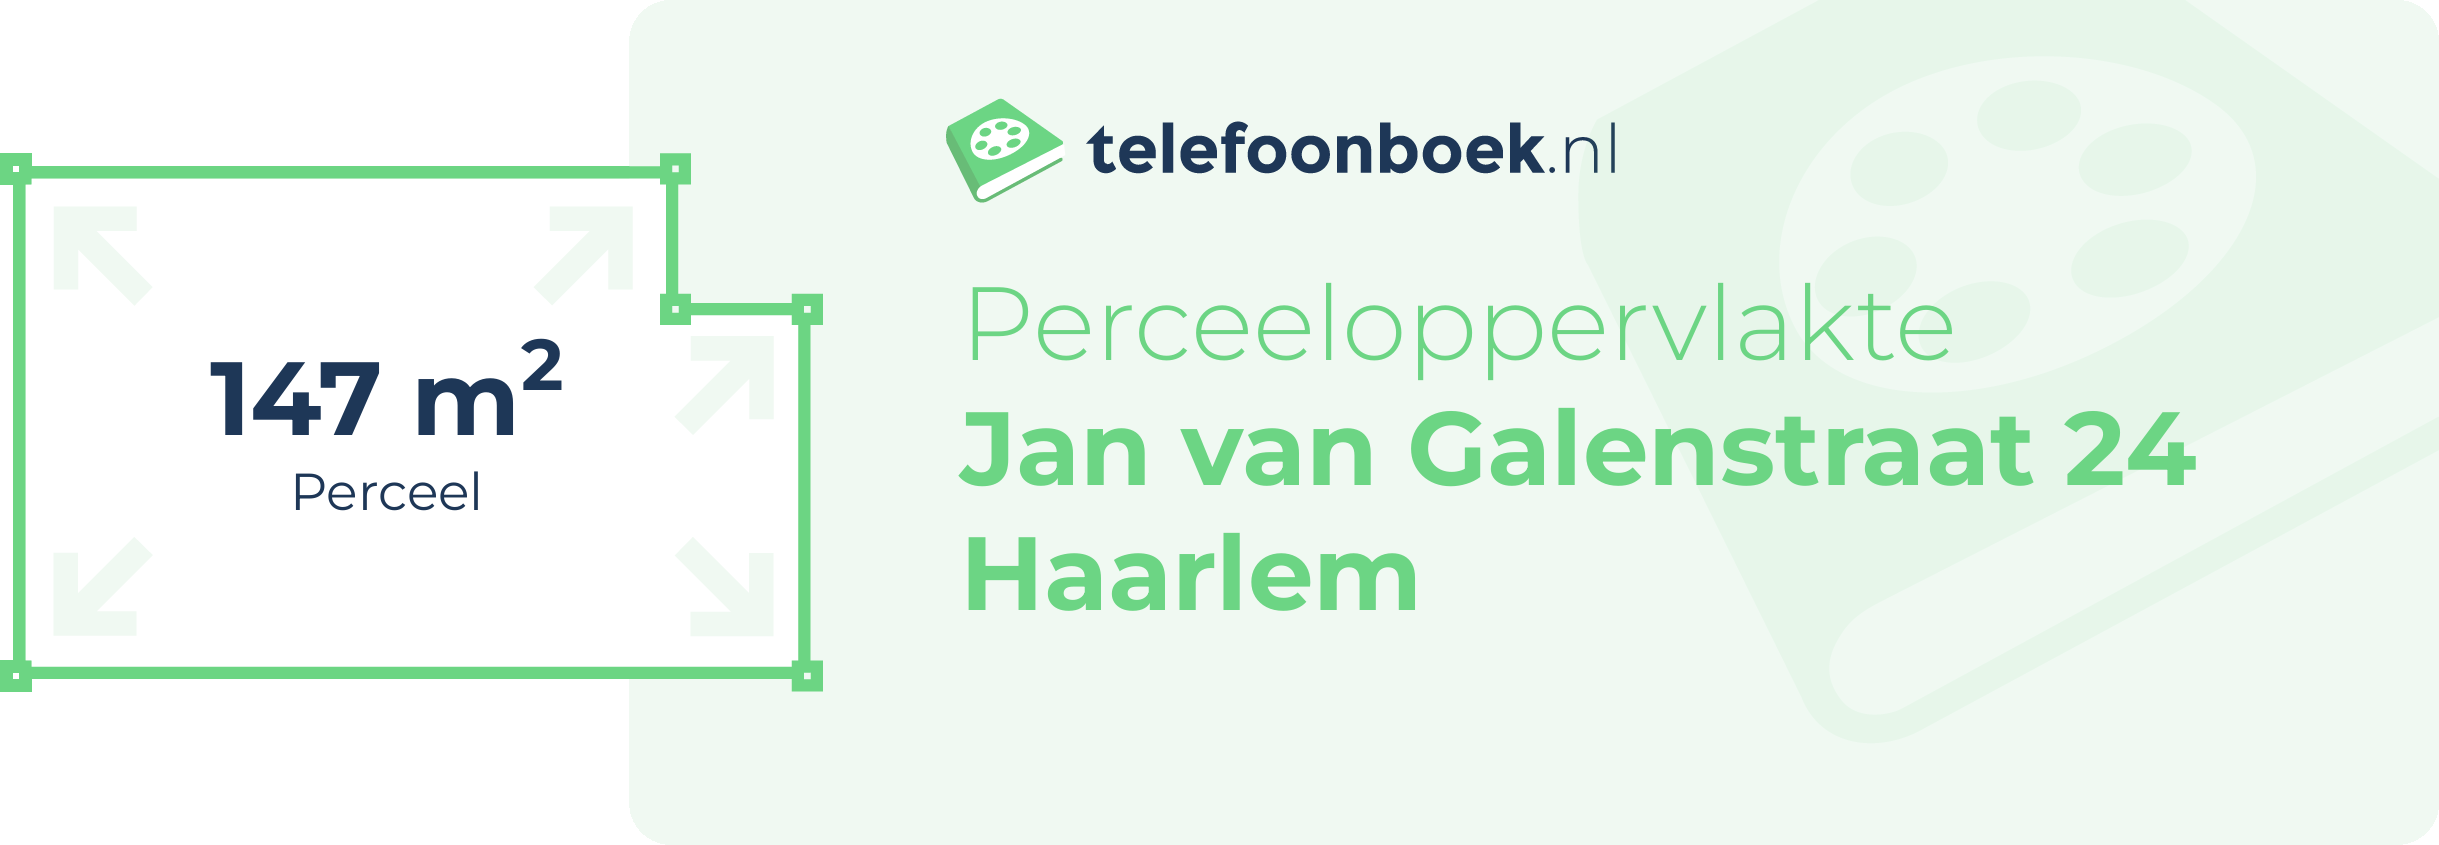 Perceeloppervlakte Jan Van Galenstraat 24 Haarlem